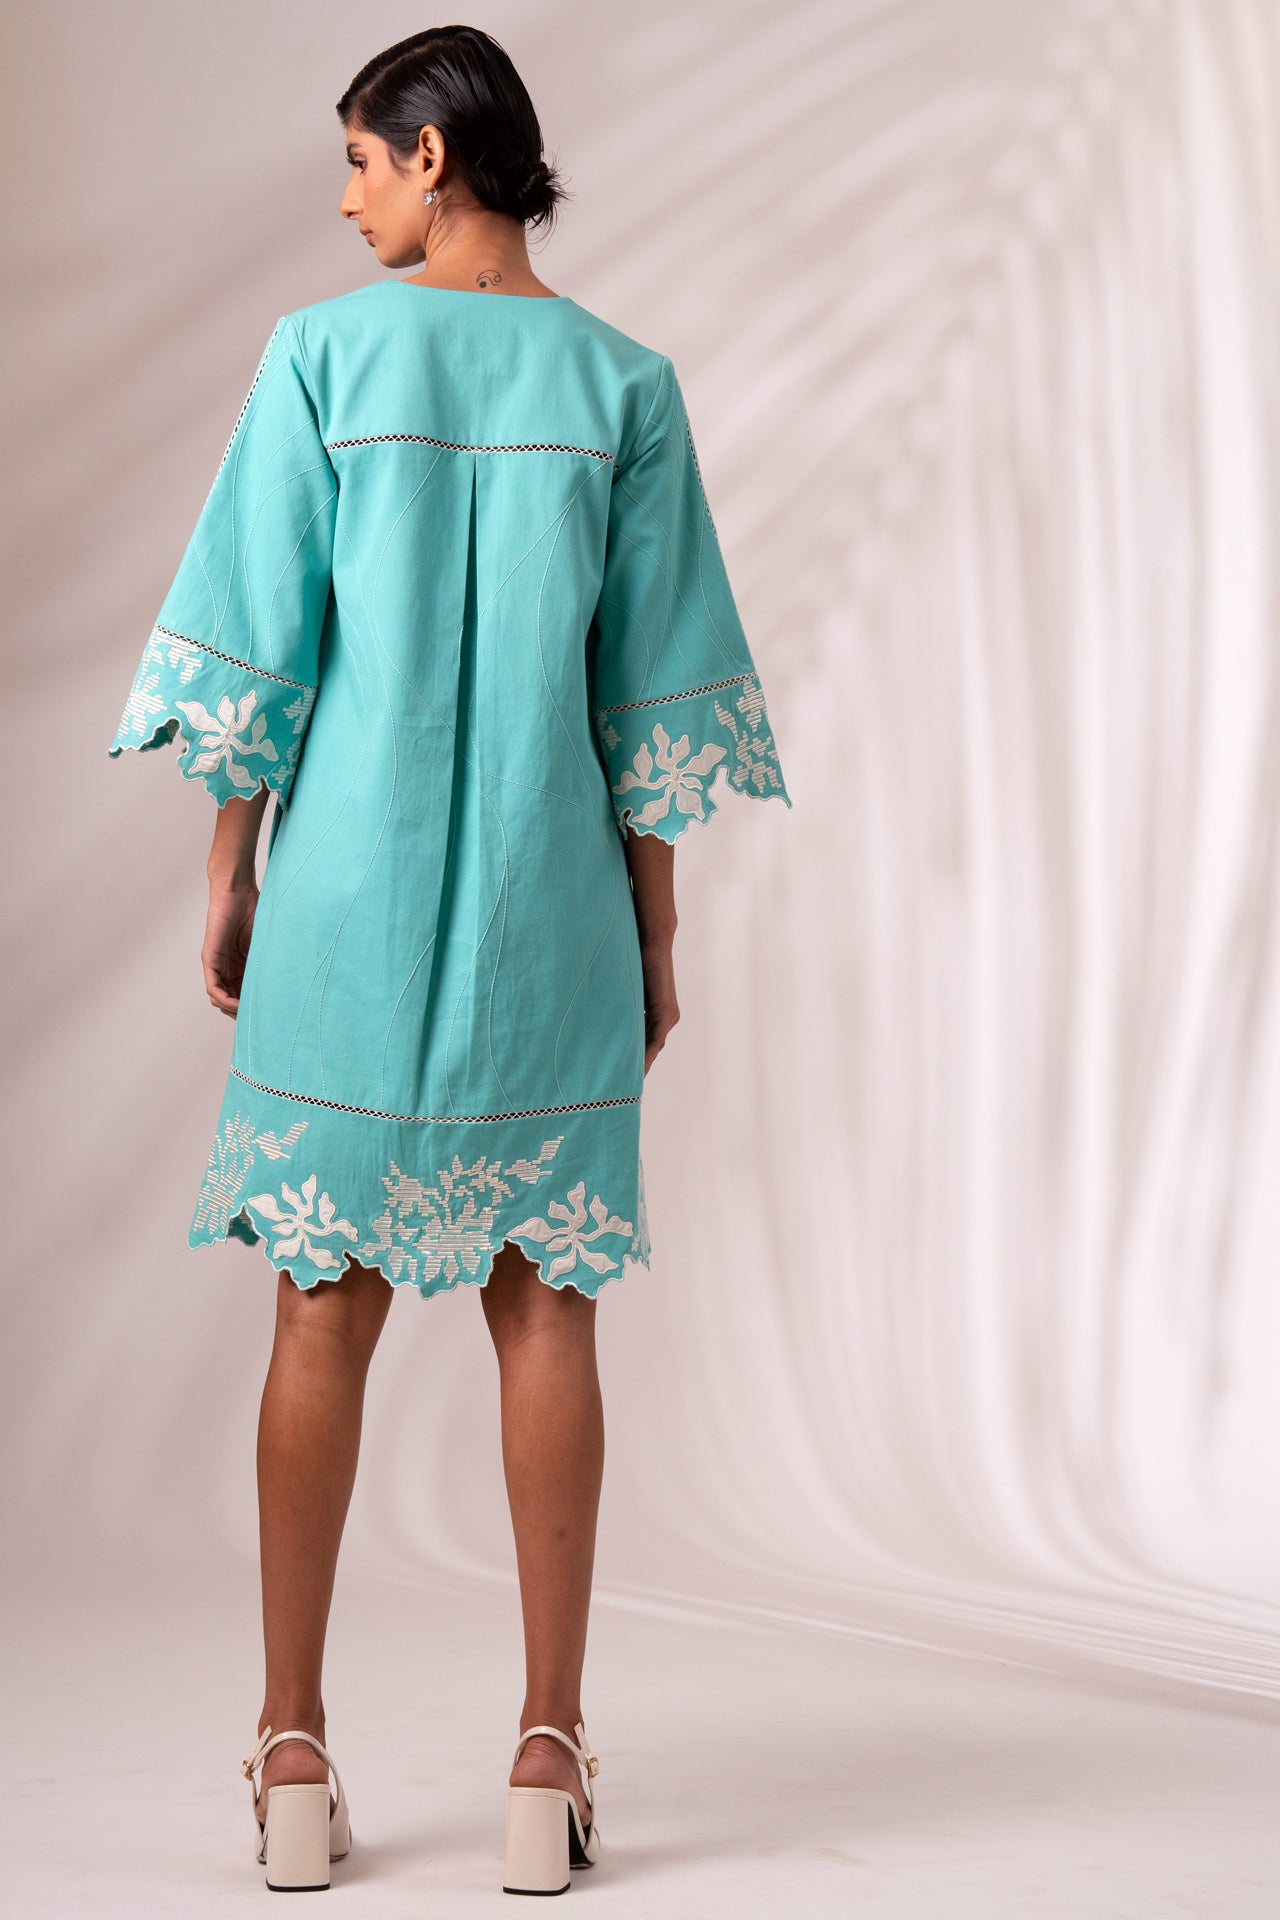 Mason - Sea Green Short Dress